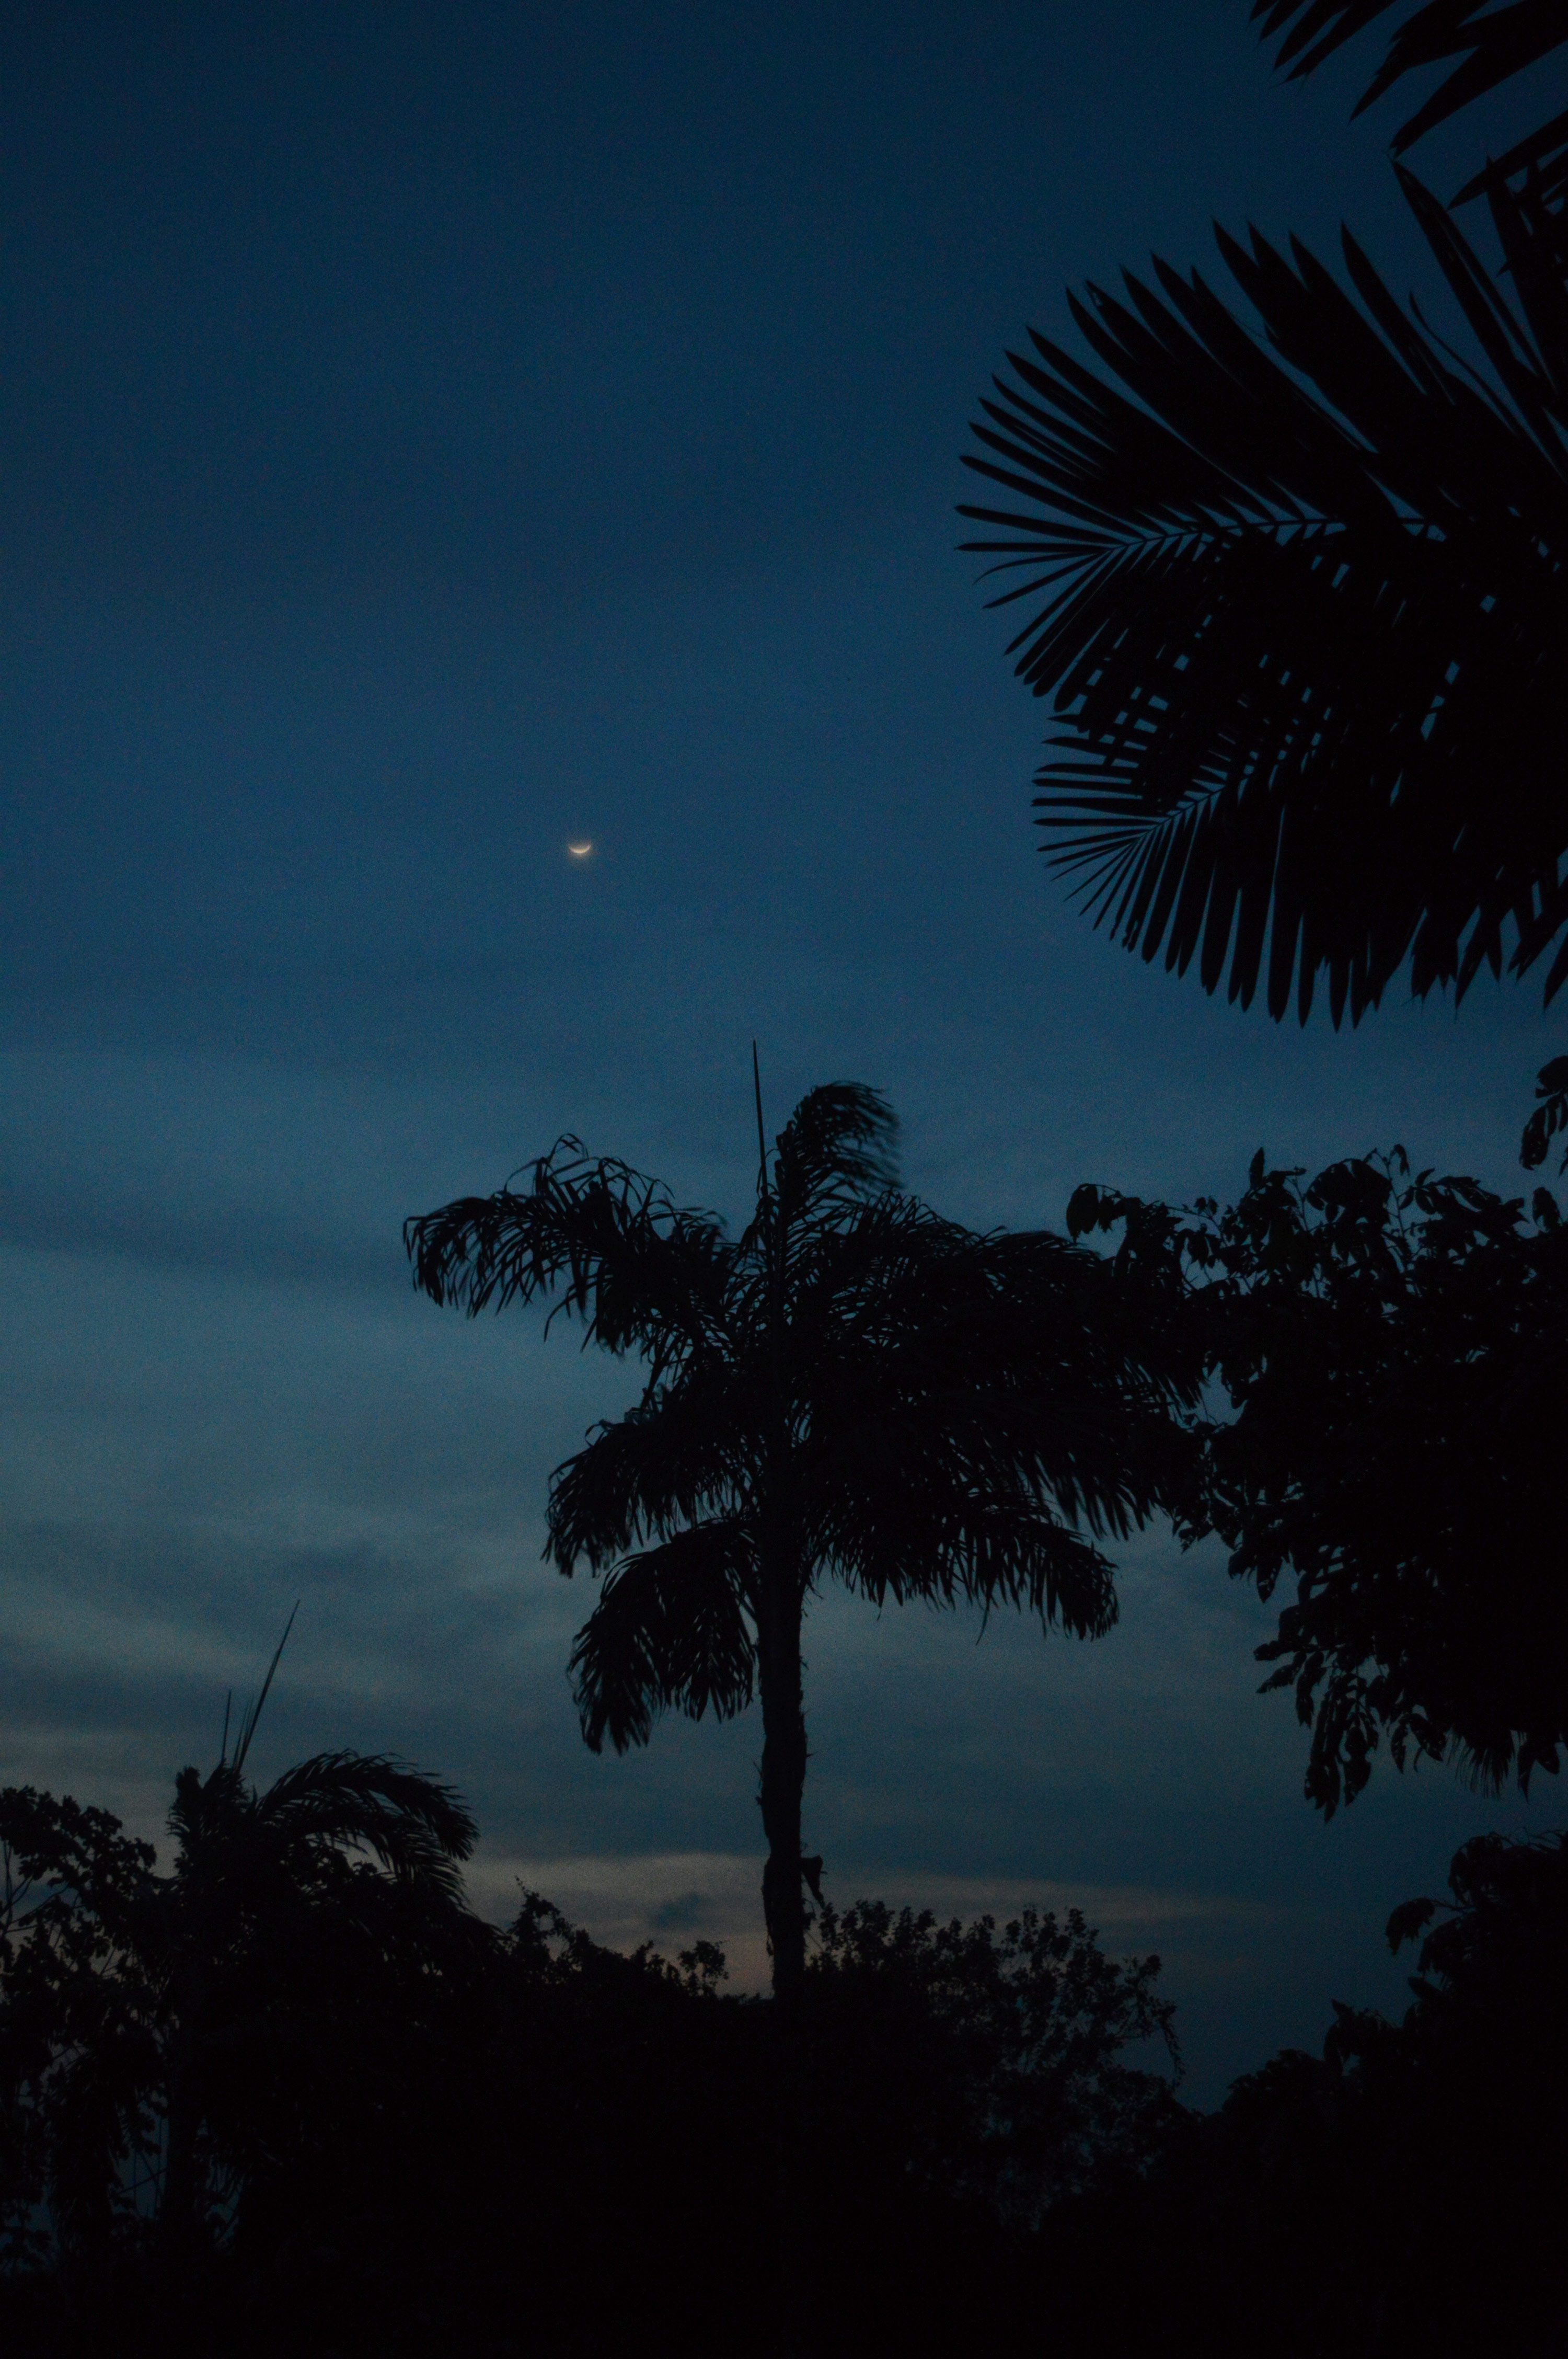 Lune en forme de sourire dans le ciel de nuit, avec les formes à contre jour de palmiers au premier plan